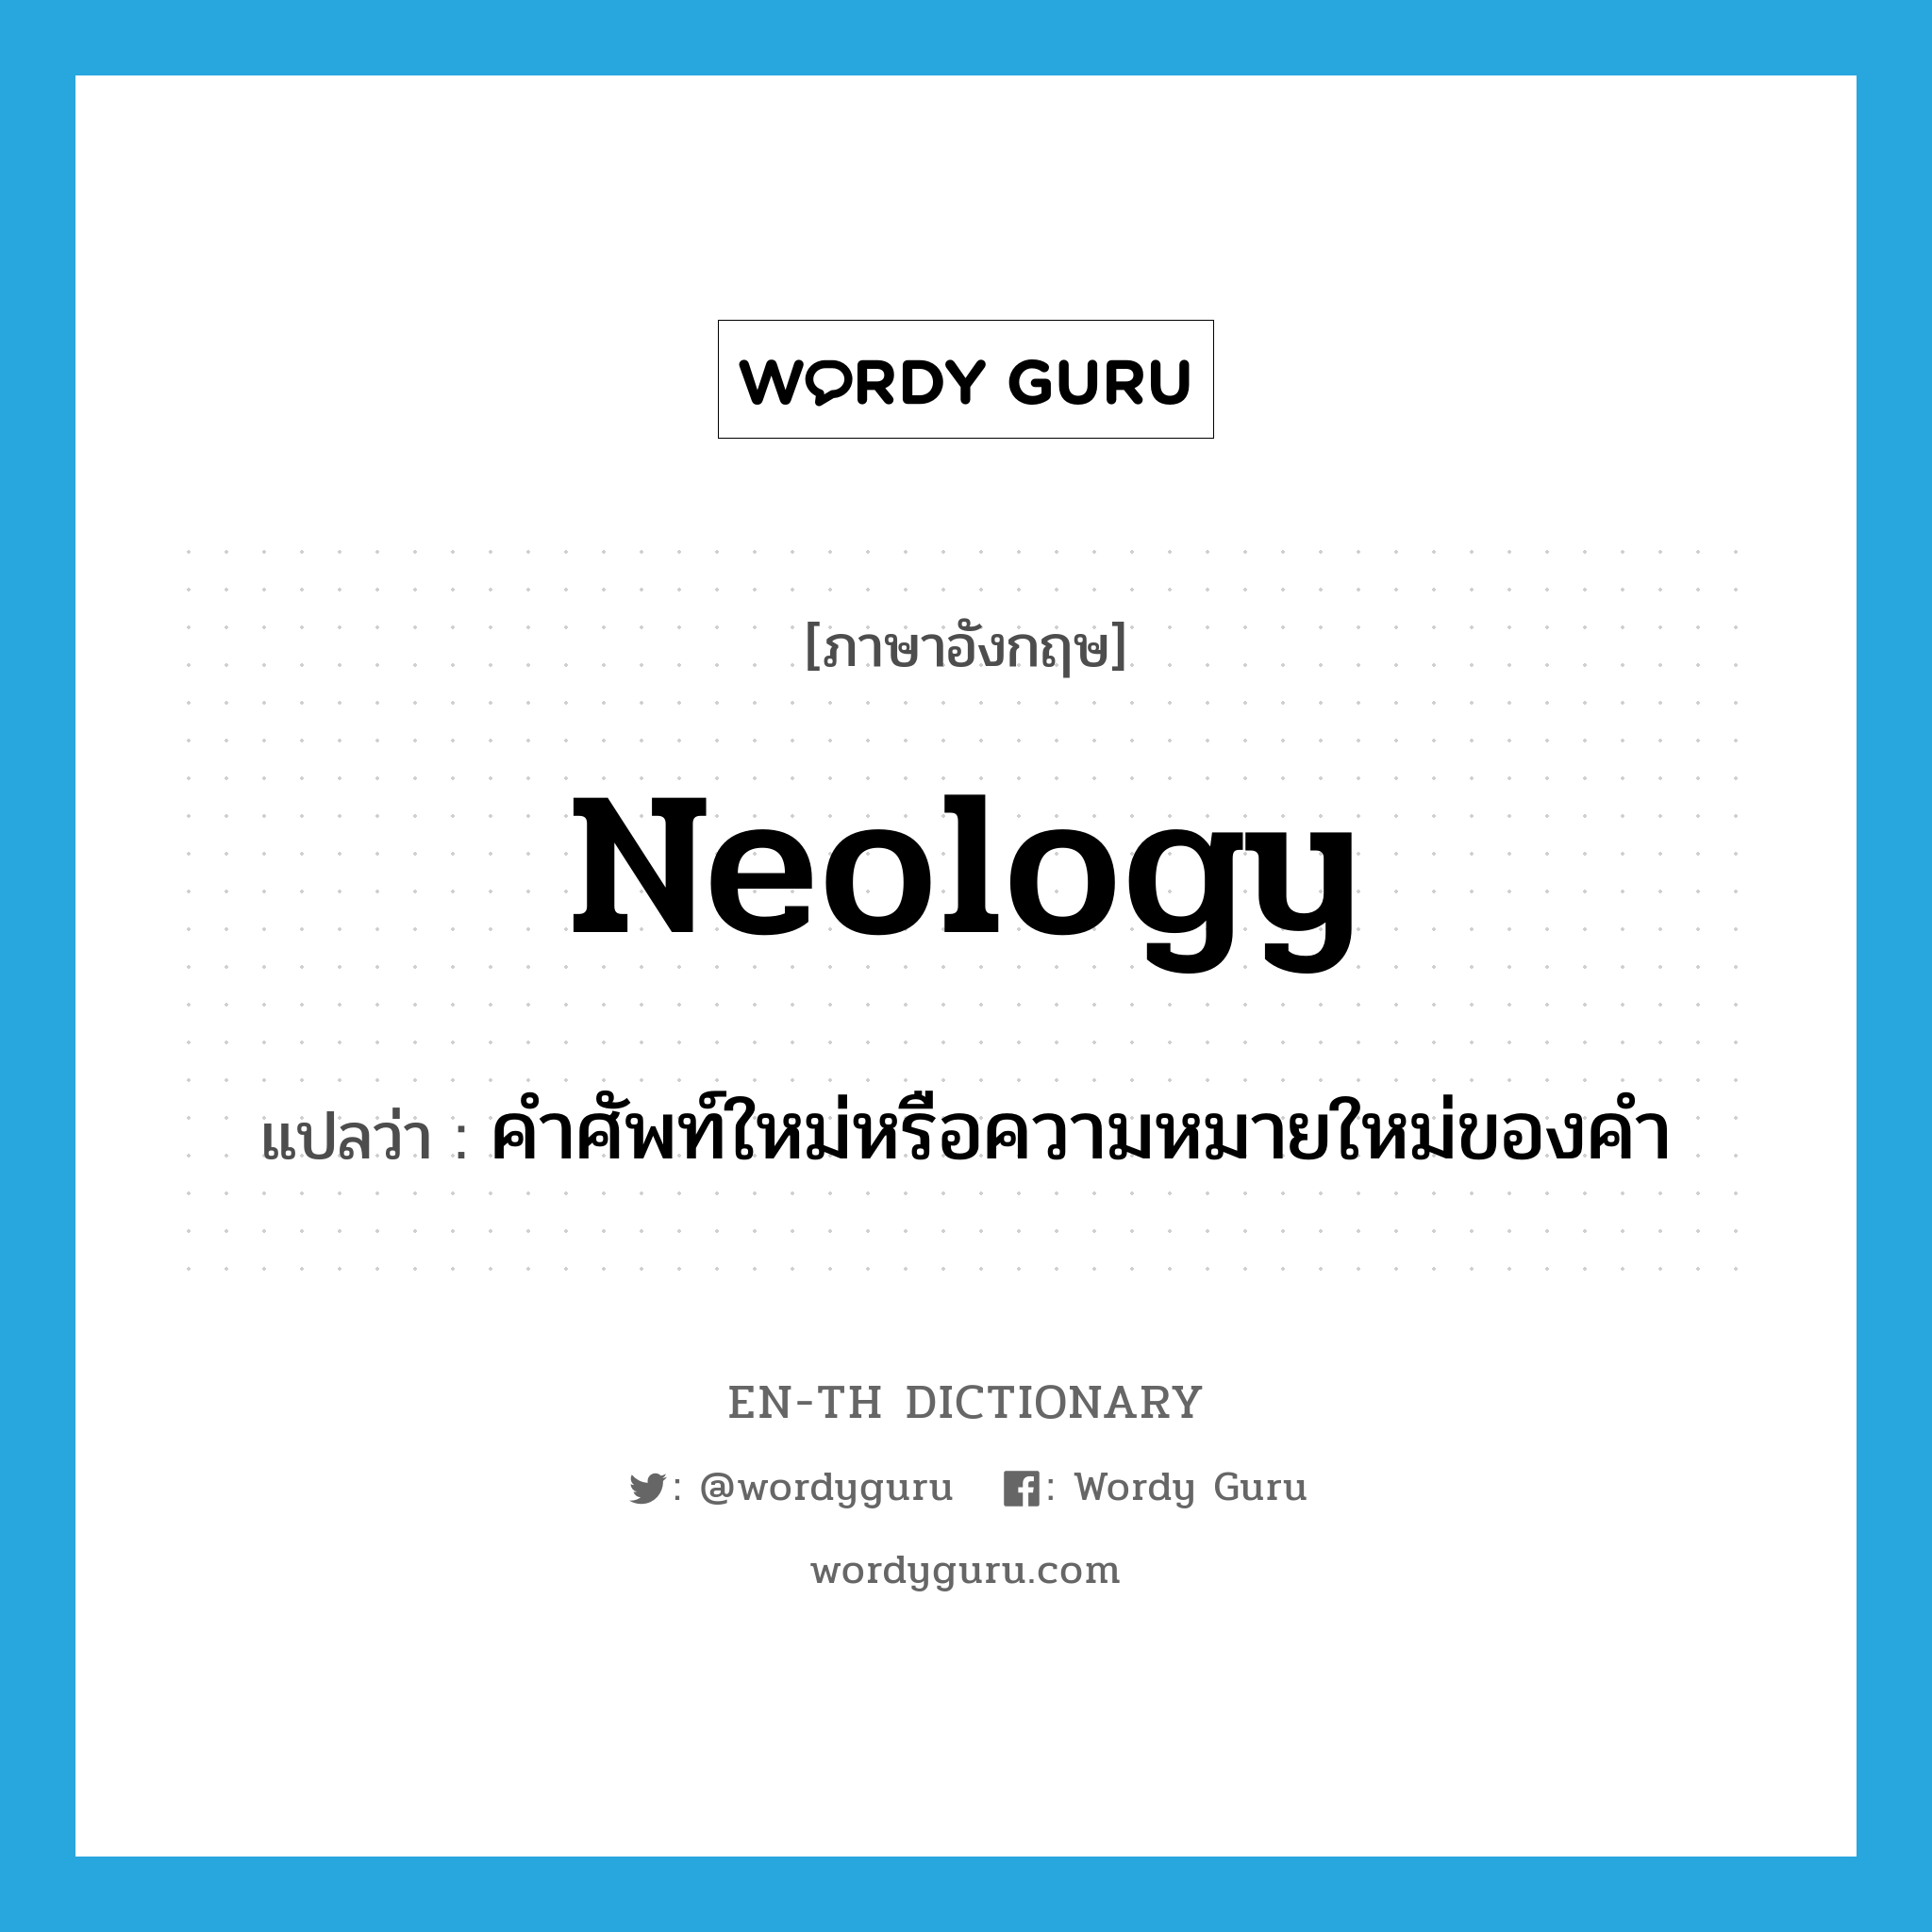 คำศัพท์ใหม่หรือความหมายใหม่ของคำ ภาษาอังกฤษ?, คำศัพท์ภาษาอังกฤษ คำศัพท์ใหม่หรือความหมายใหม่ของคำ แปลว่า neology ประเภท N หมวด N